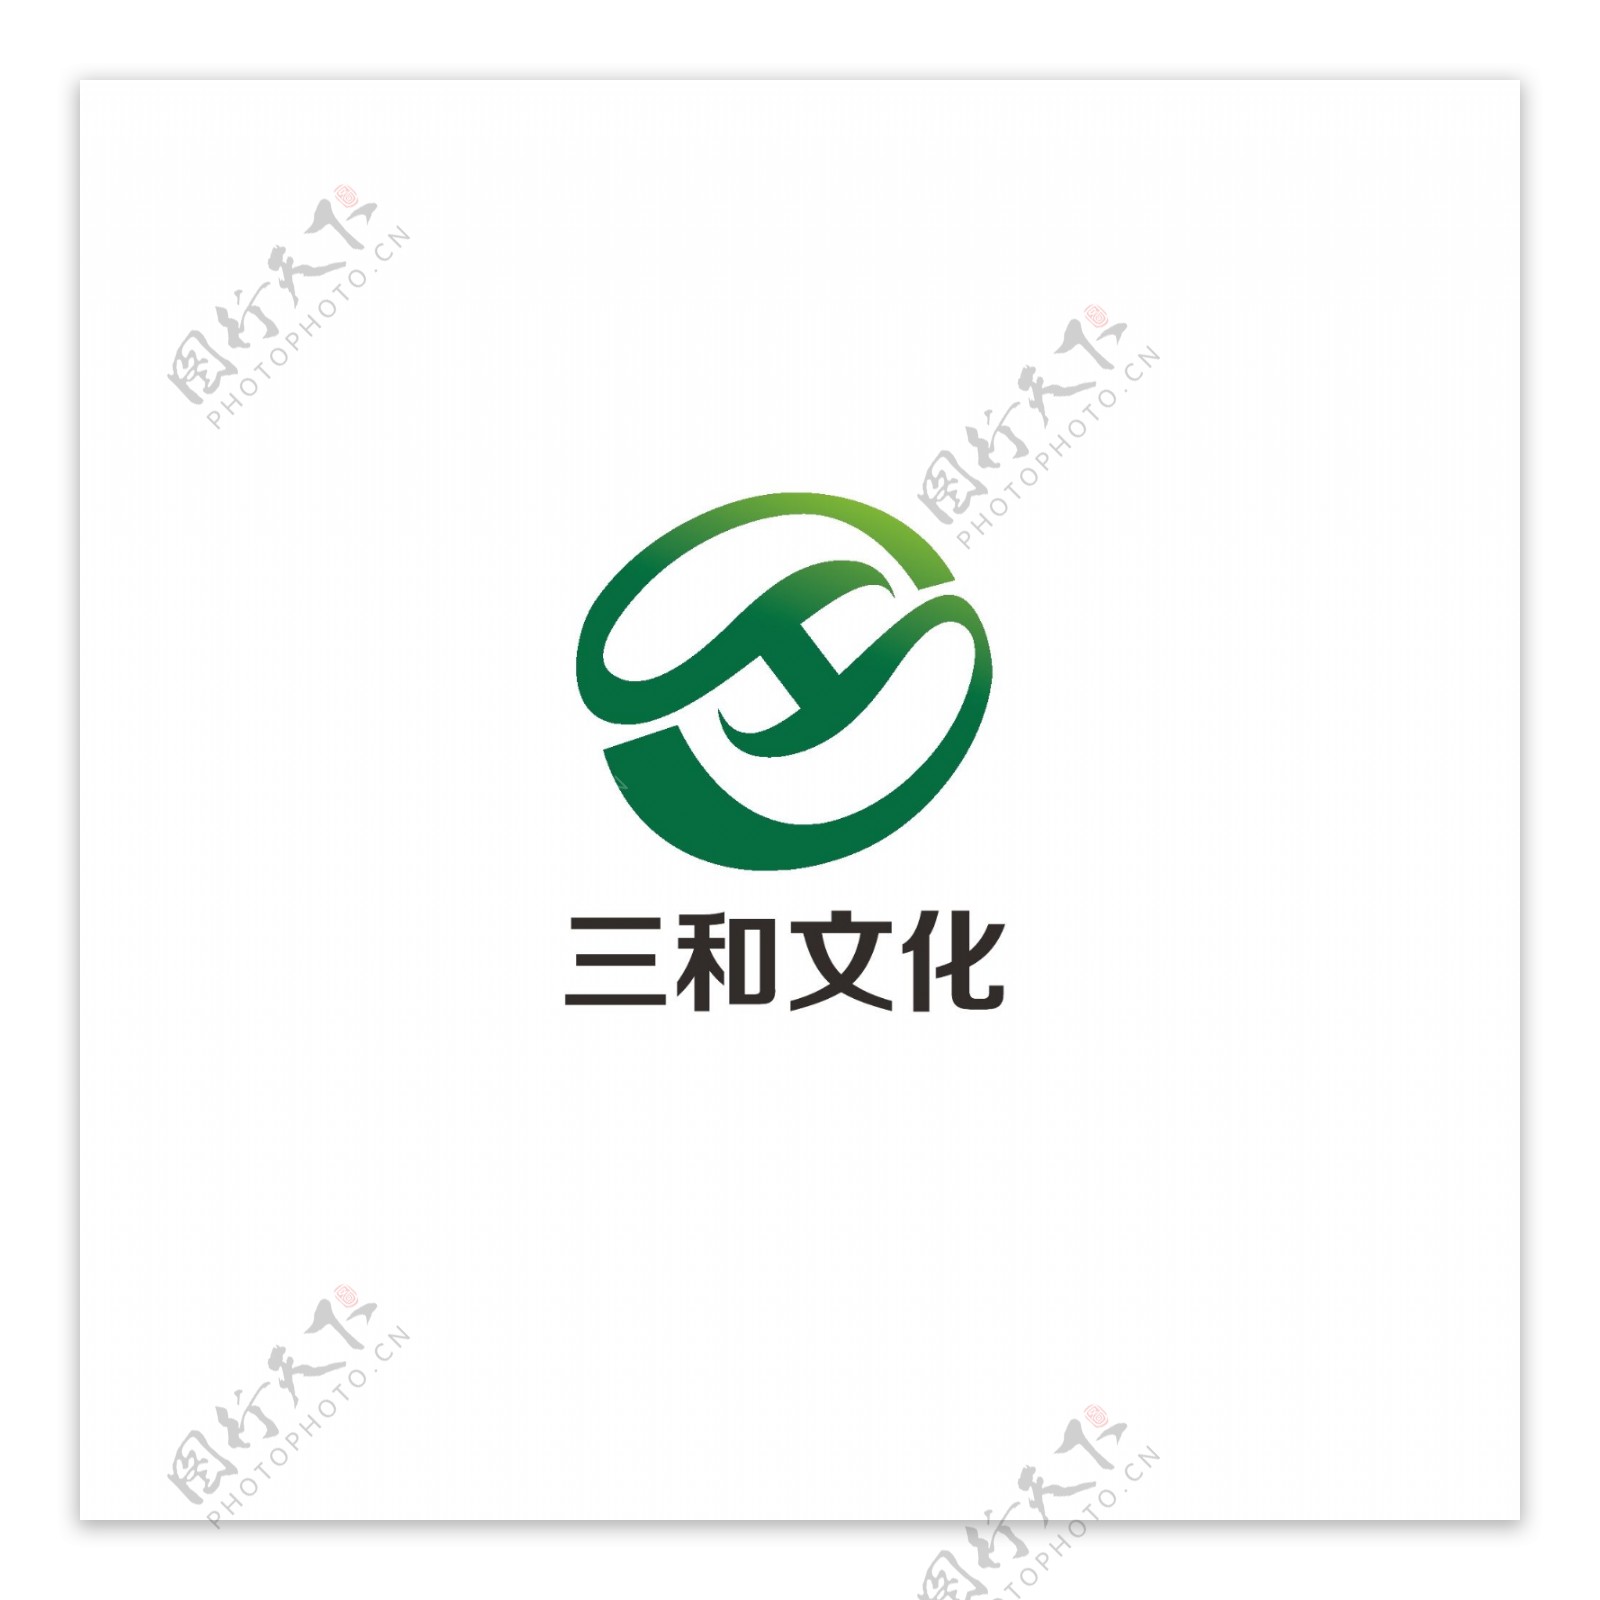 文化公司logo